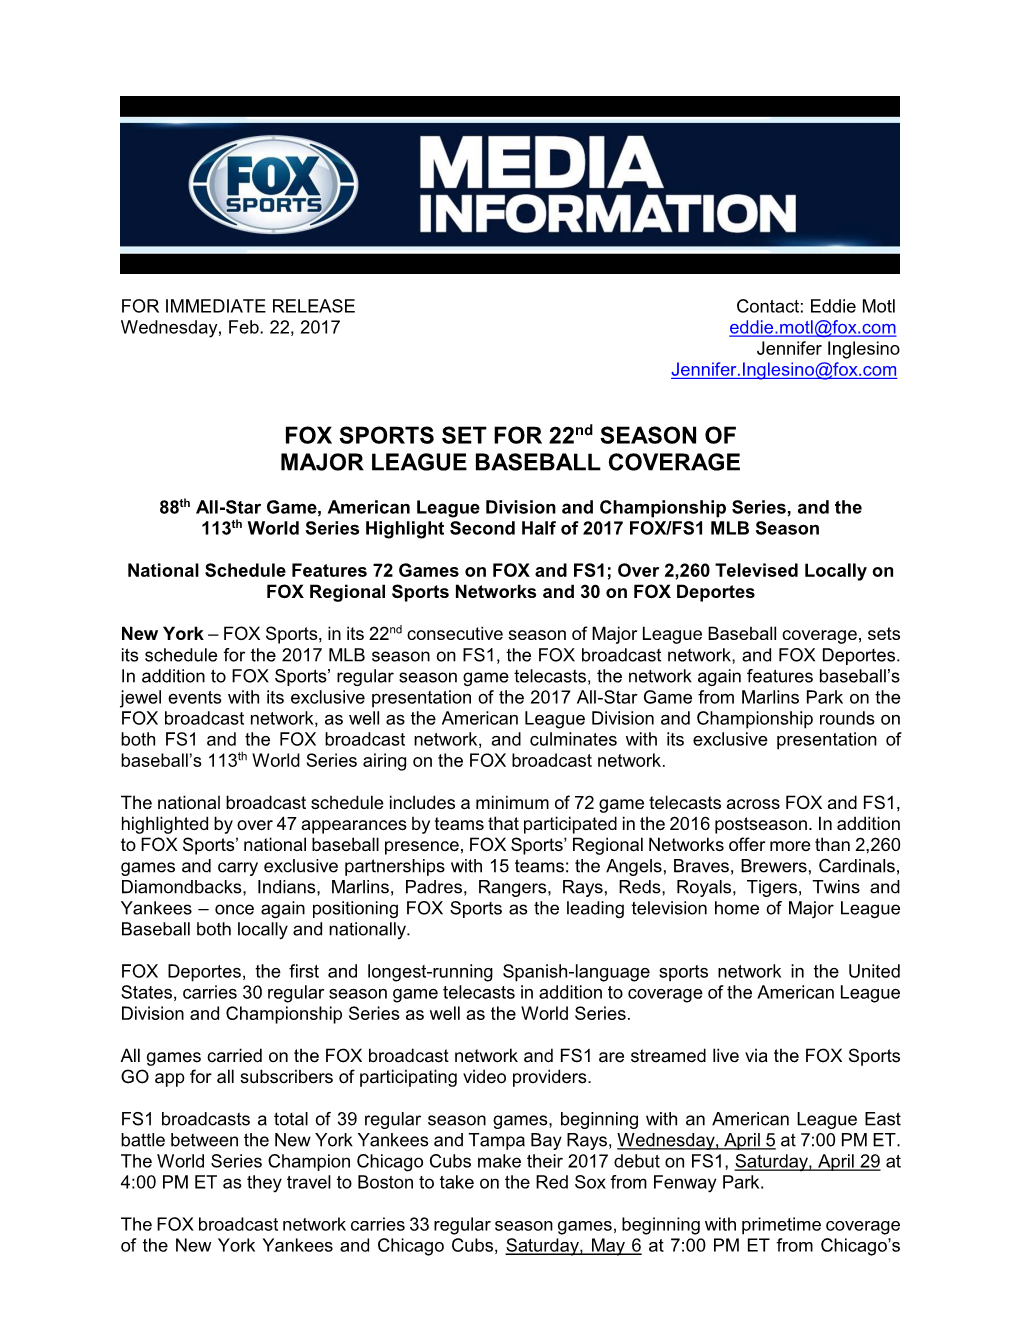 FOX SPORTS SET for 22Nd SEASON of MAJOR LEAGUE BASEBALL COVERAGE